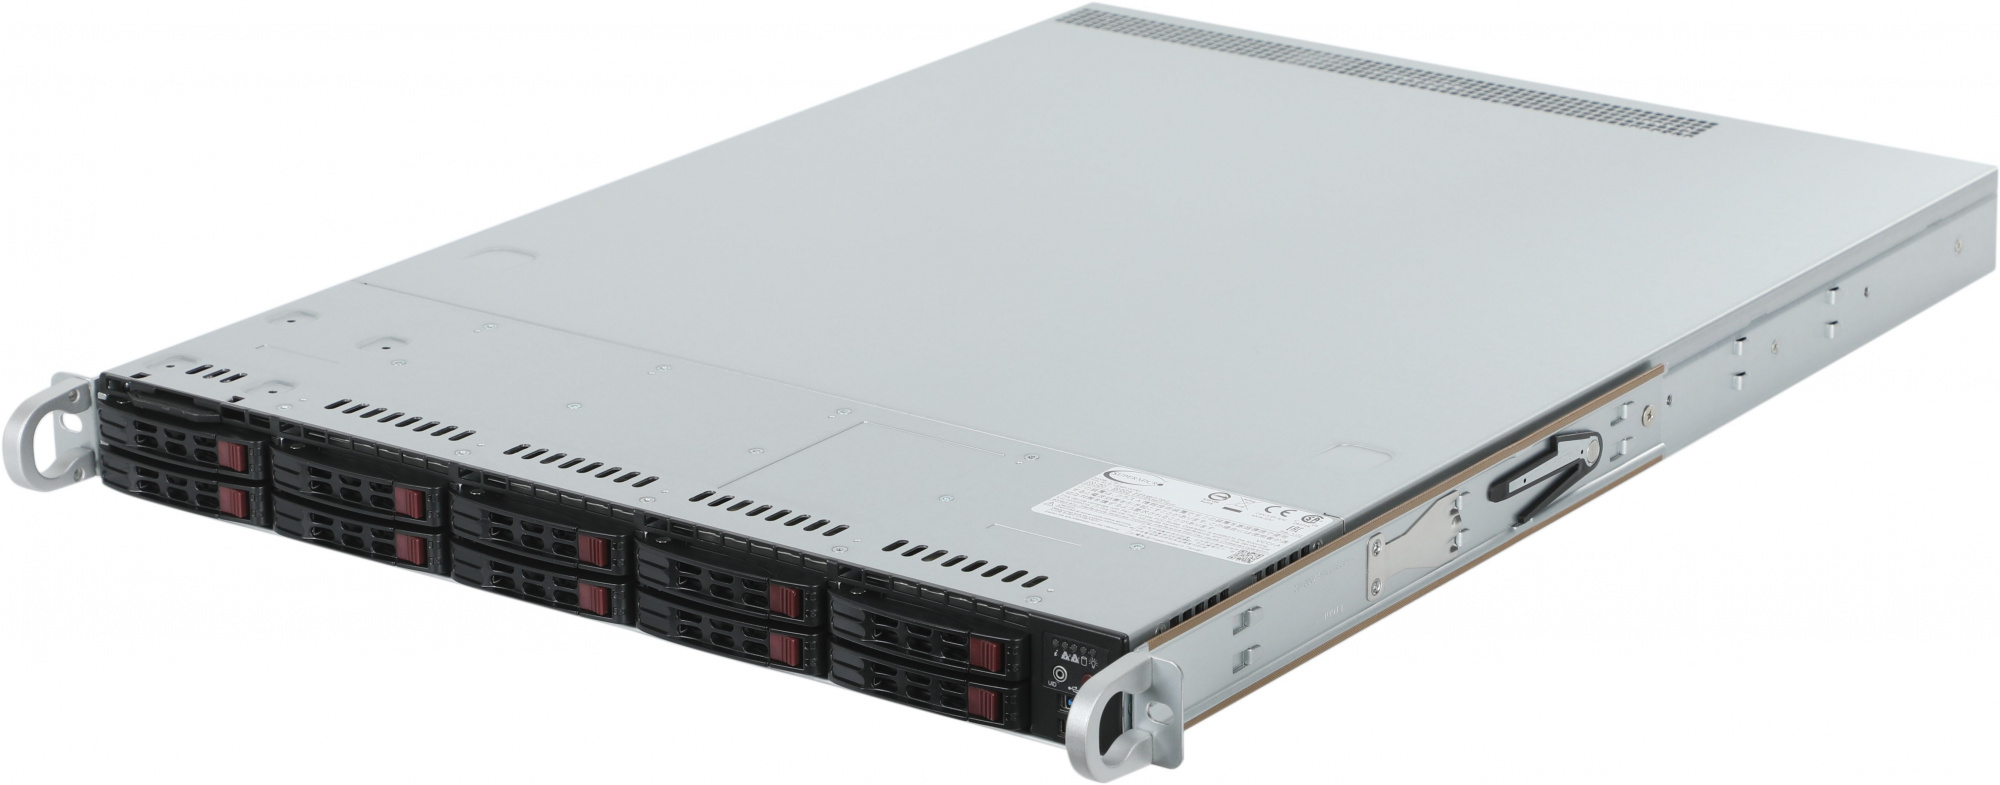 Сервер IRU Rock s1210p 2x4214 4x32Gb 1x500Gb SSD 2x750W w/ o OS (2002395)